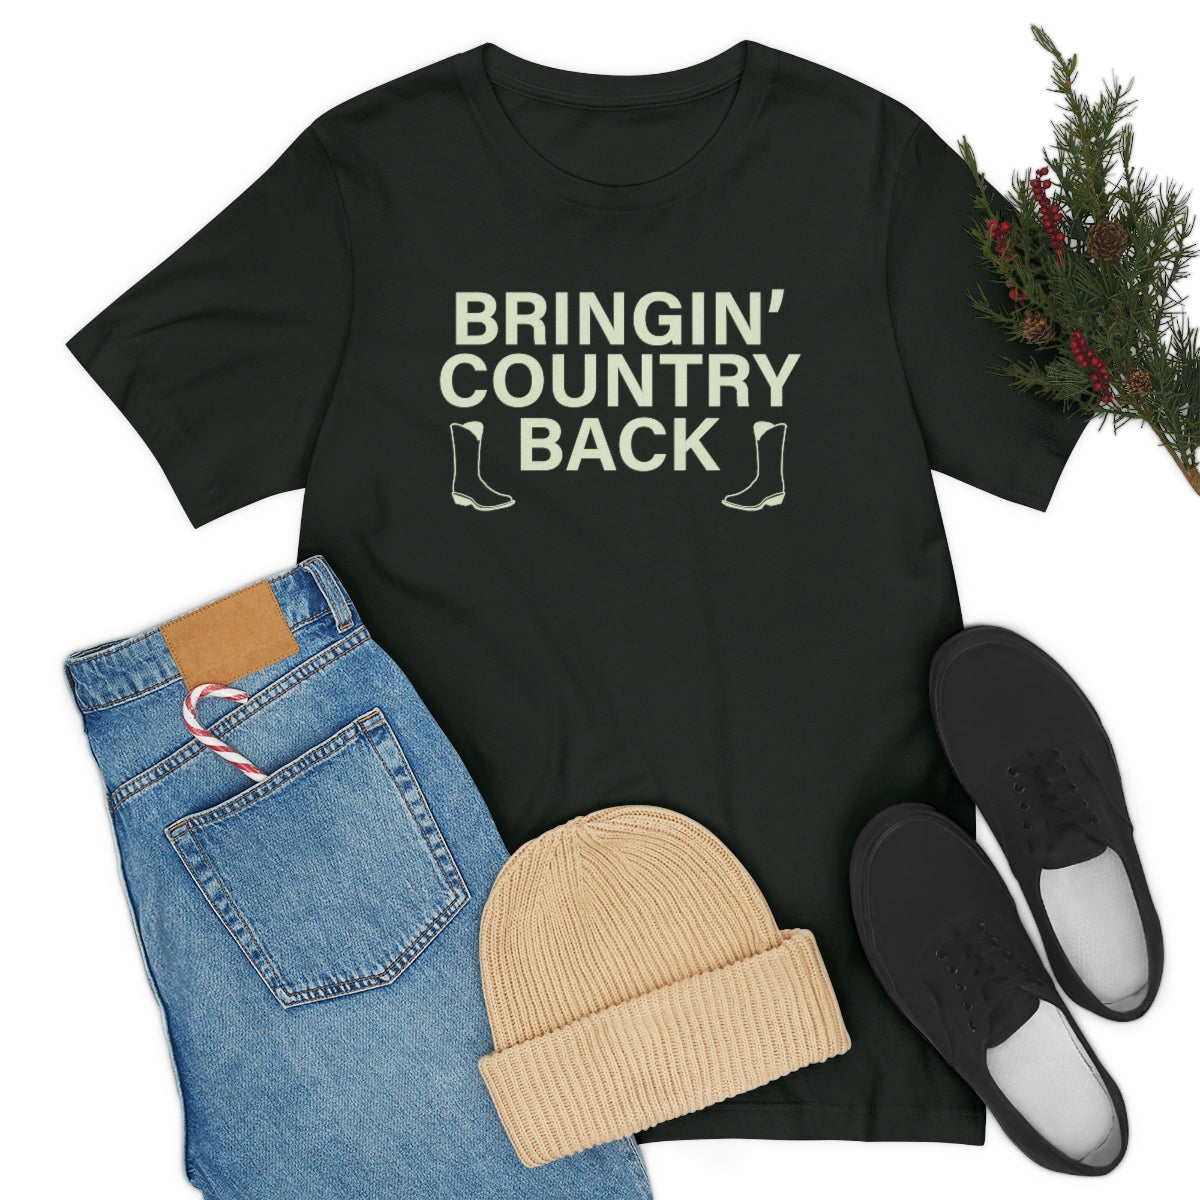 Bringin' Country Back T shirt